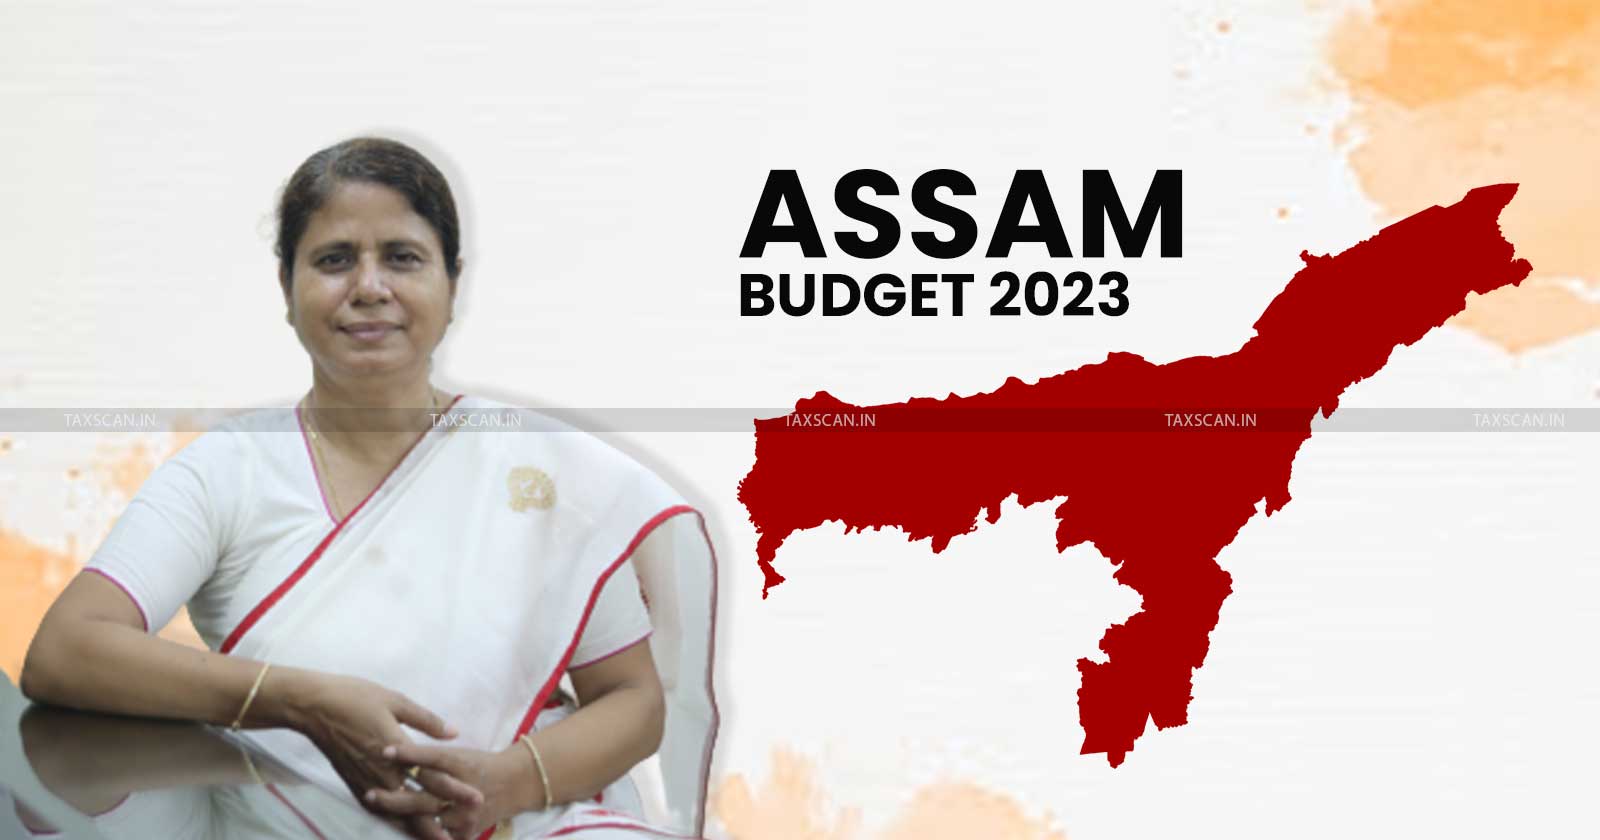 Assam Budget - Assam FM - State Budget 2023 - Key Highlights - Budget 2023 - Budget - Taxscan